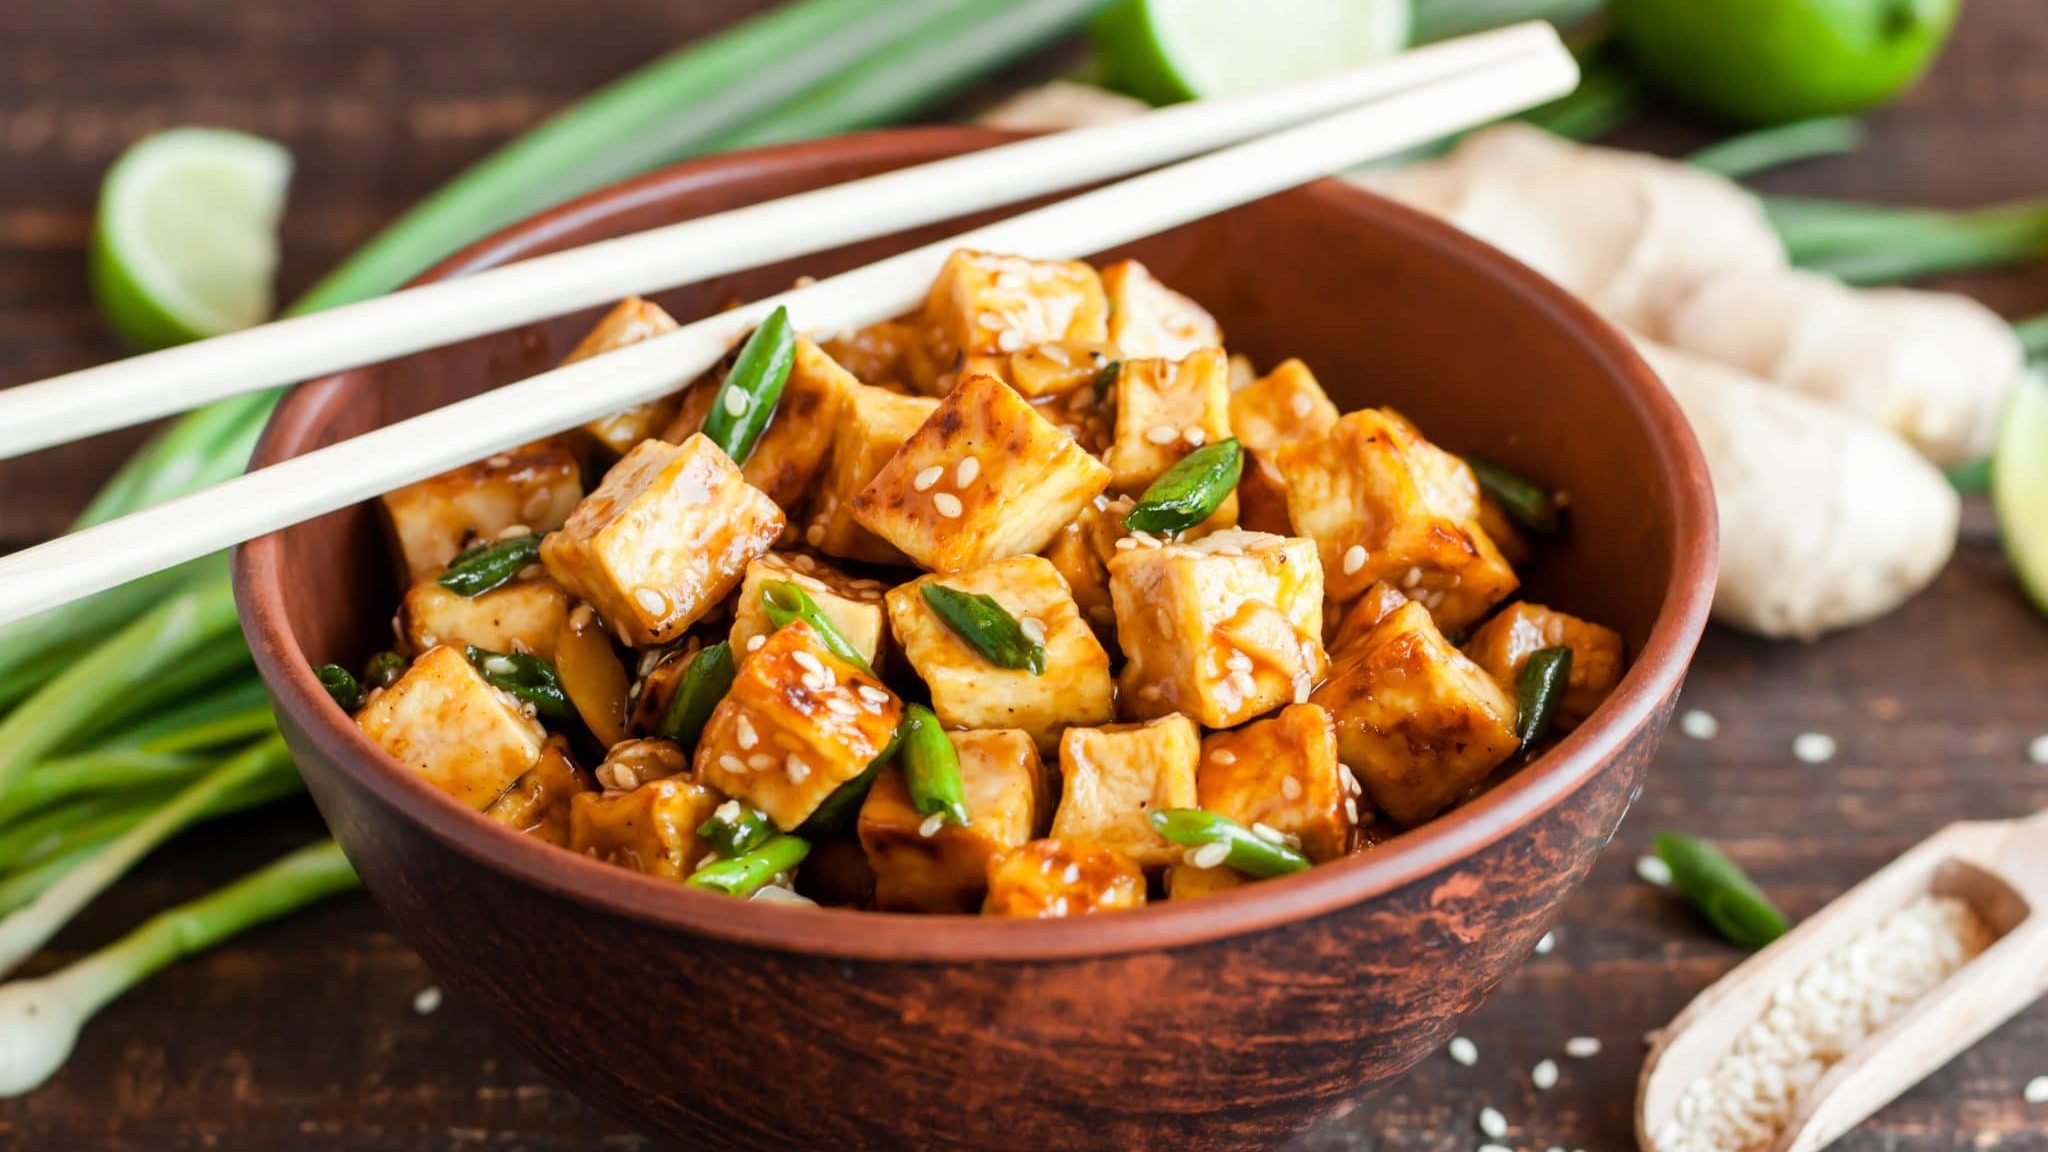 Le tofu bio, qu’est-ce que c’est ?